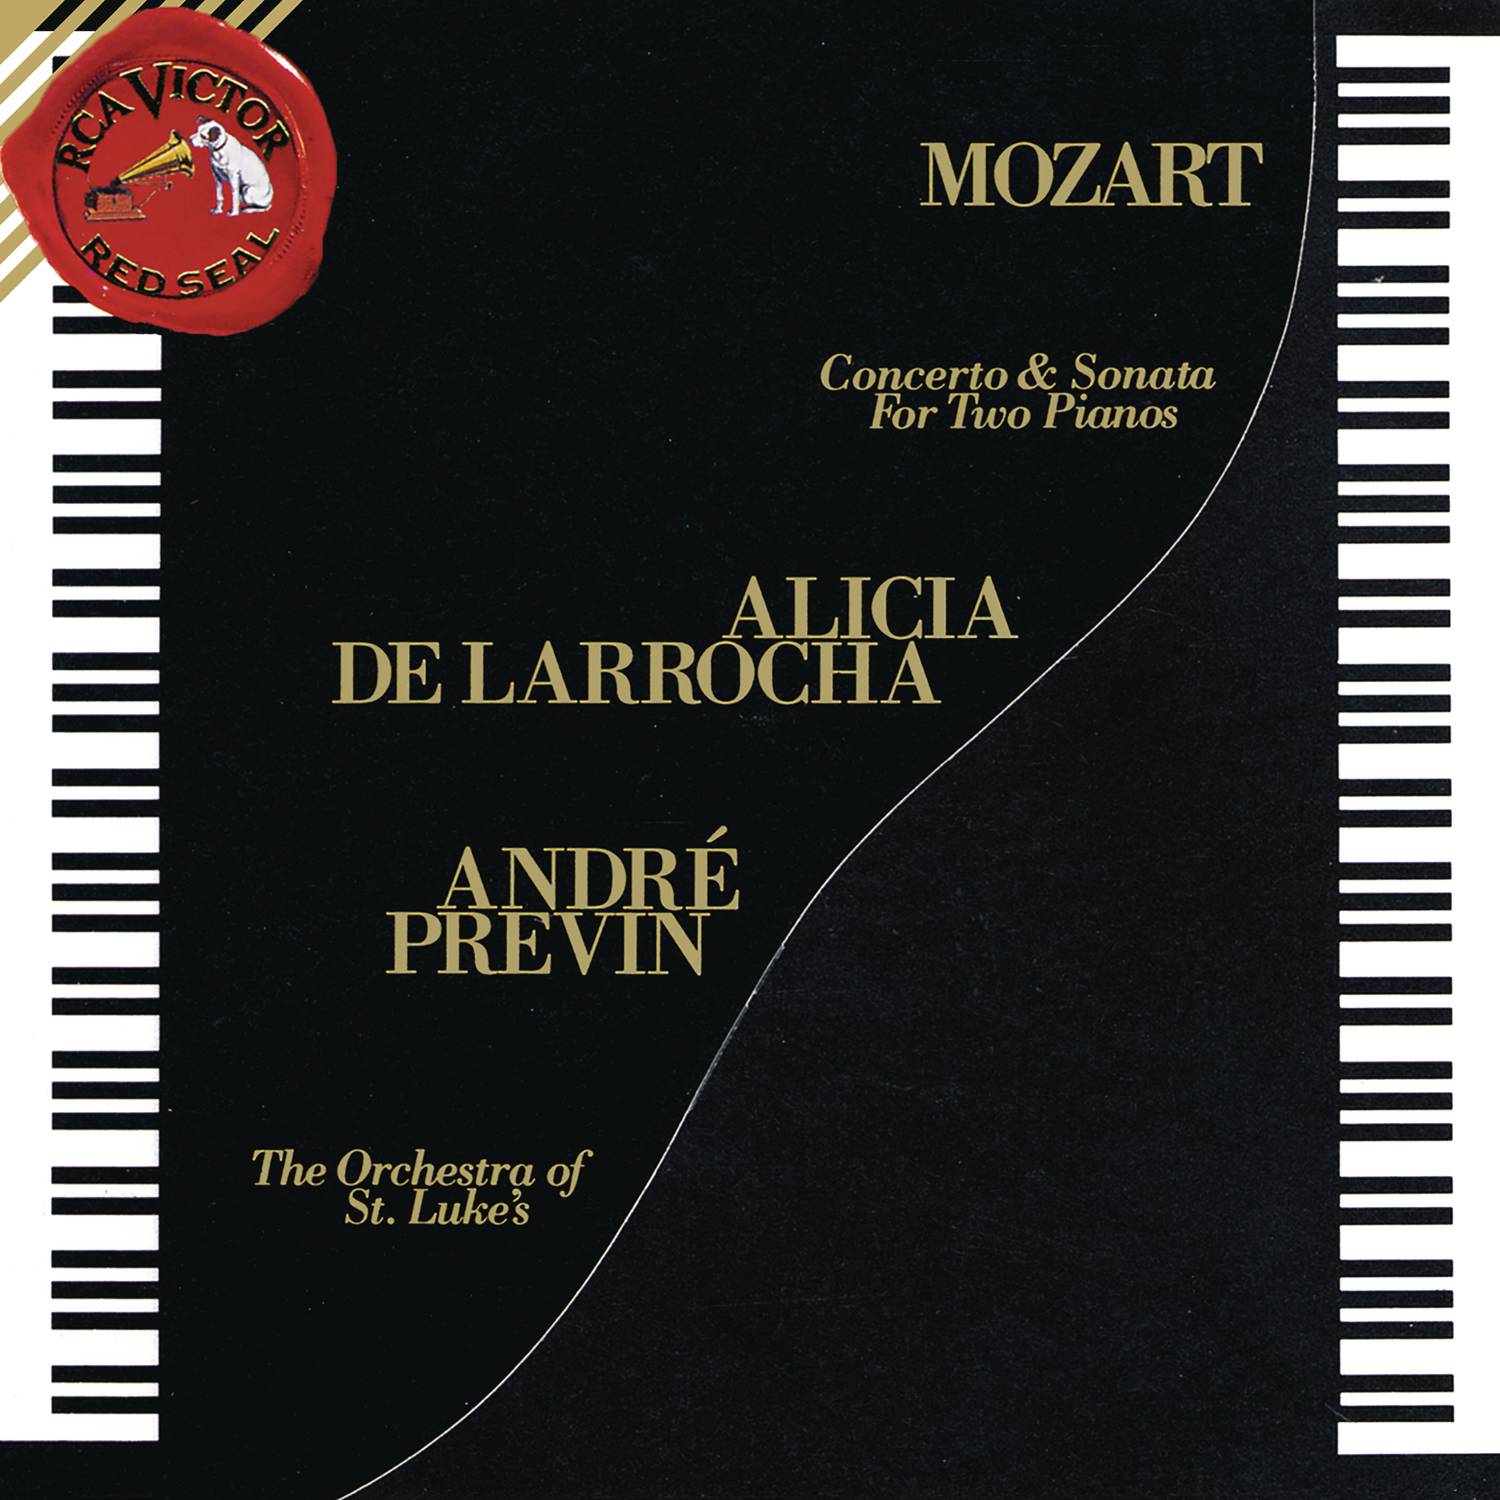 Sonata for 2 Pianos in D Major, K. 448:III. Allegro molto